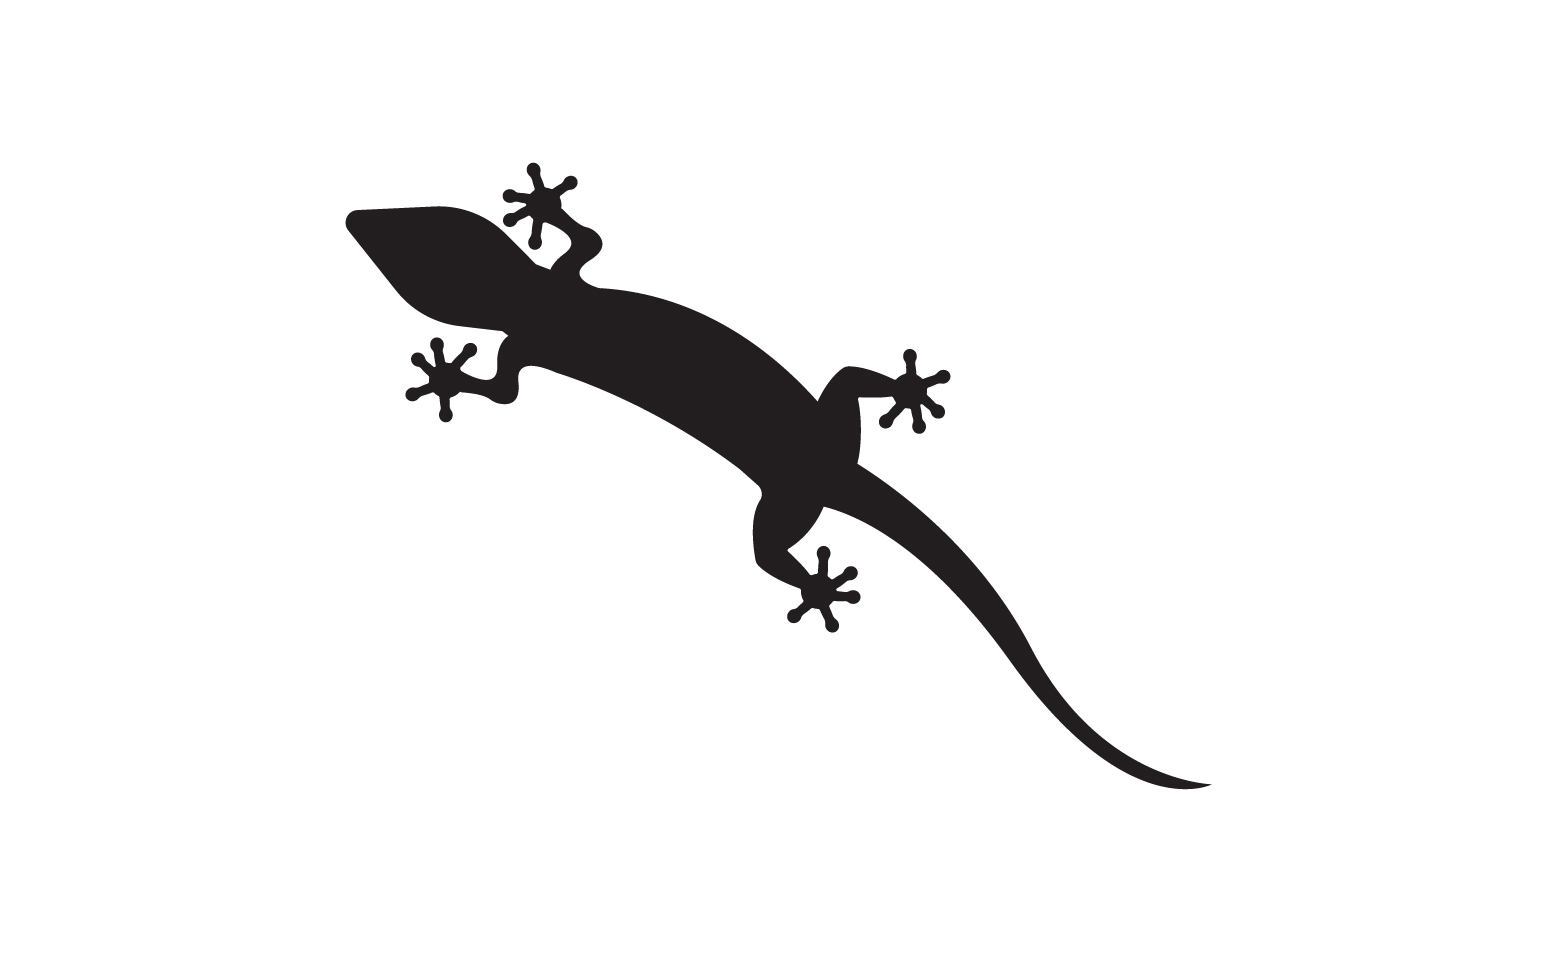 Lizard chameleon home lizard logo v27